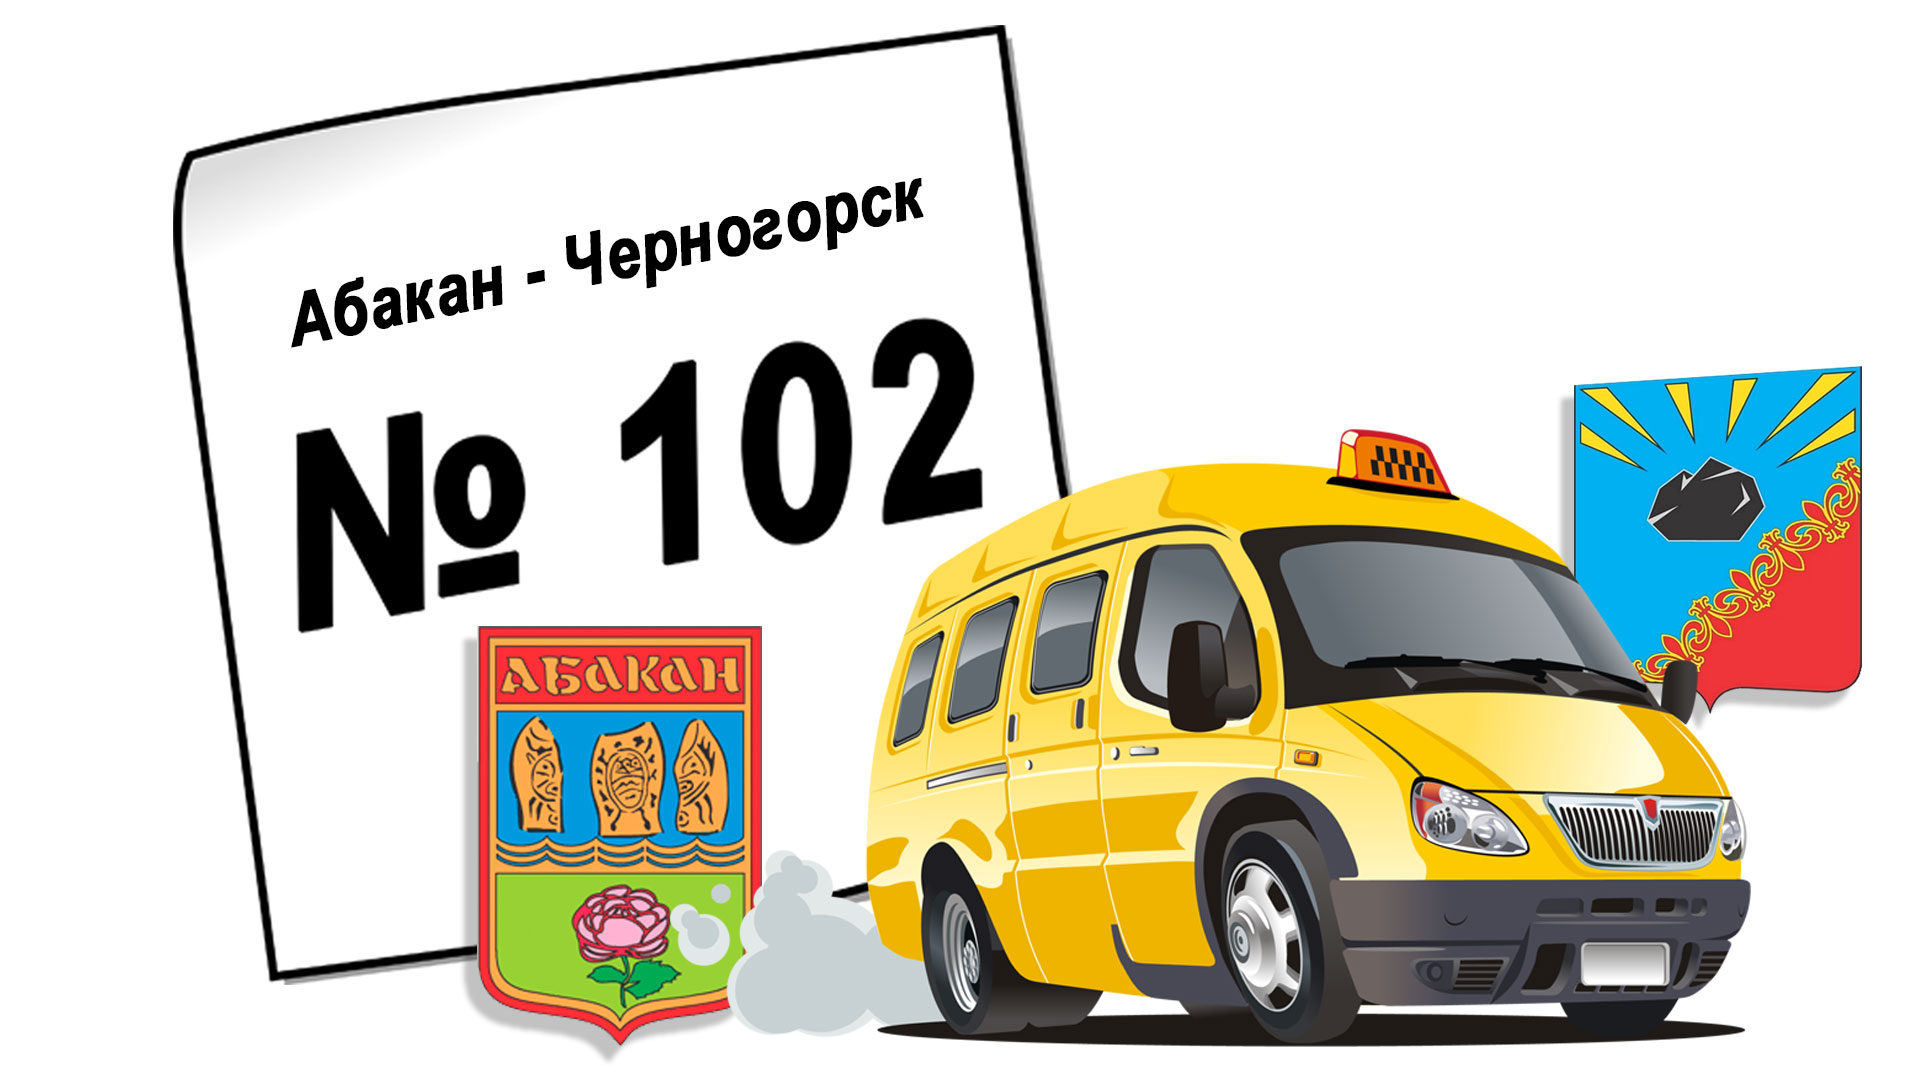 Расписание автобуса № 102, Абакан - Черногорск, маршрутка.